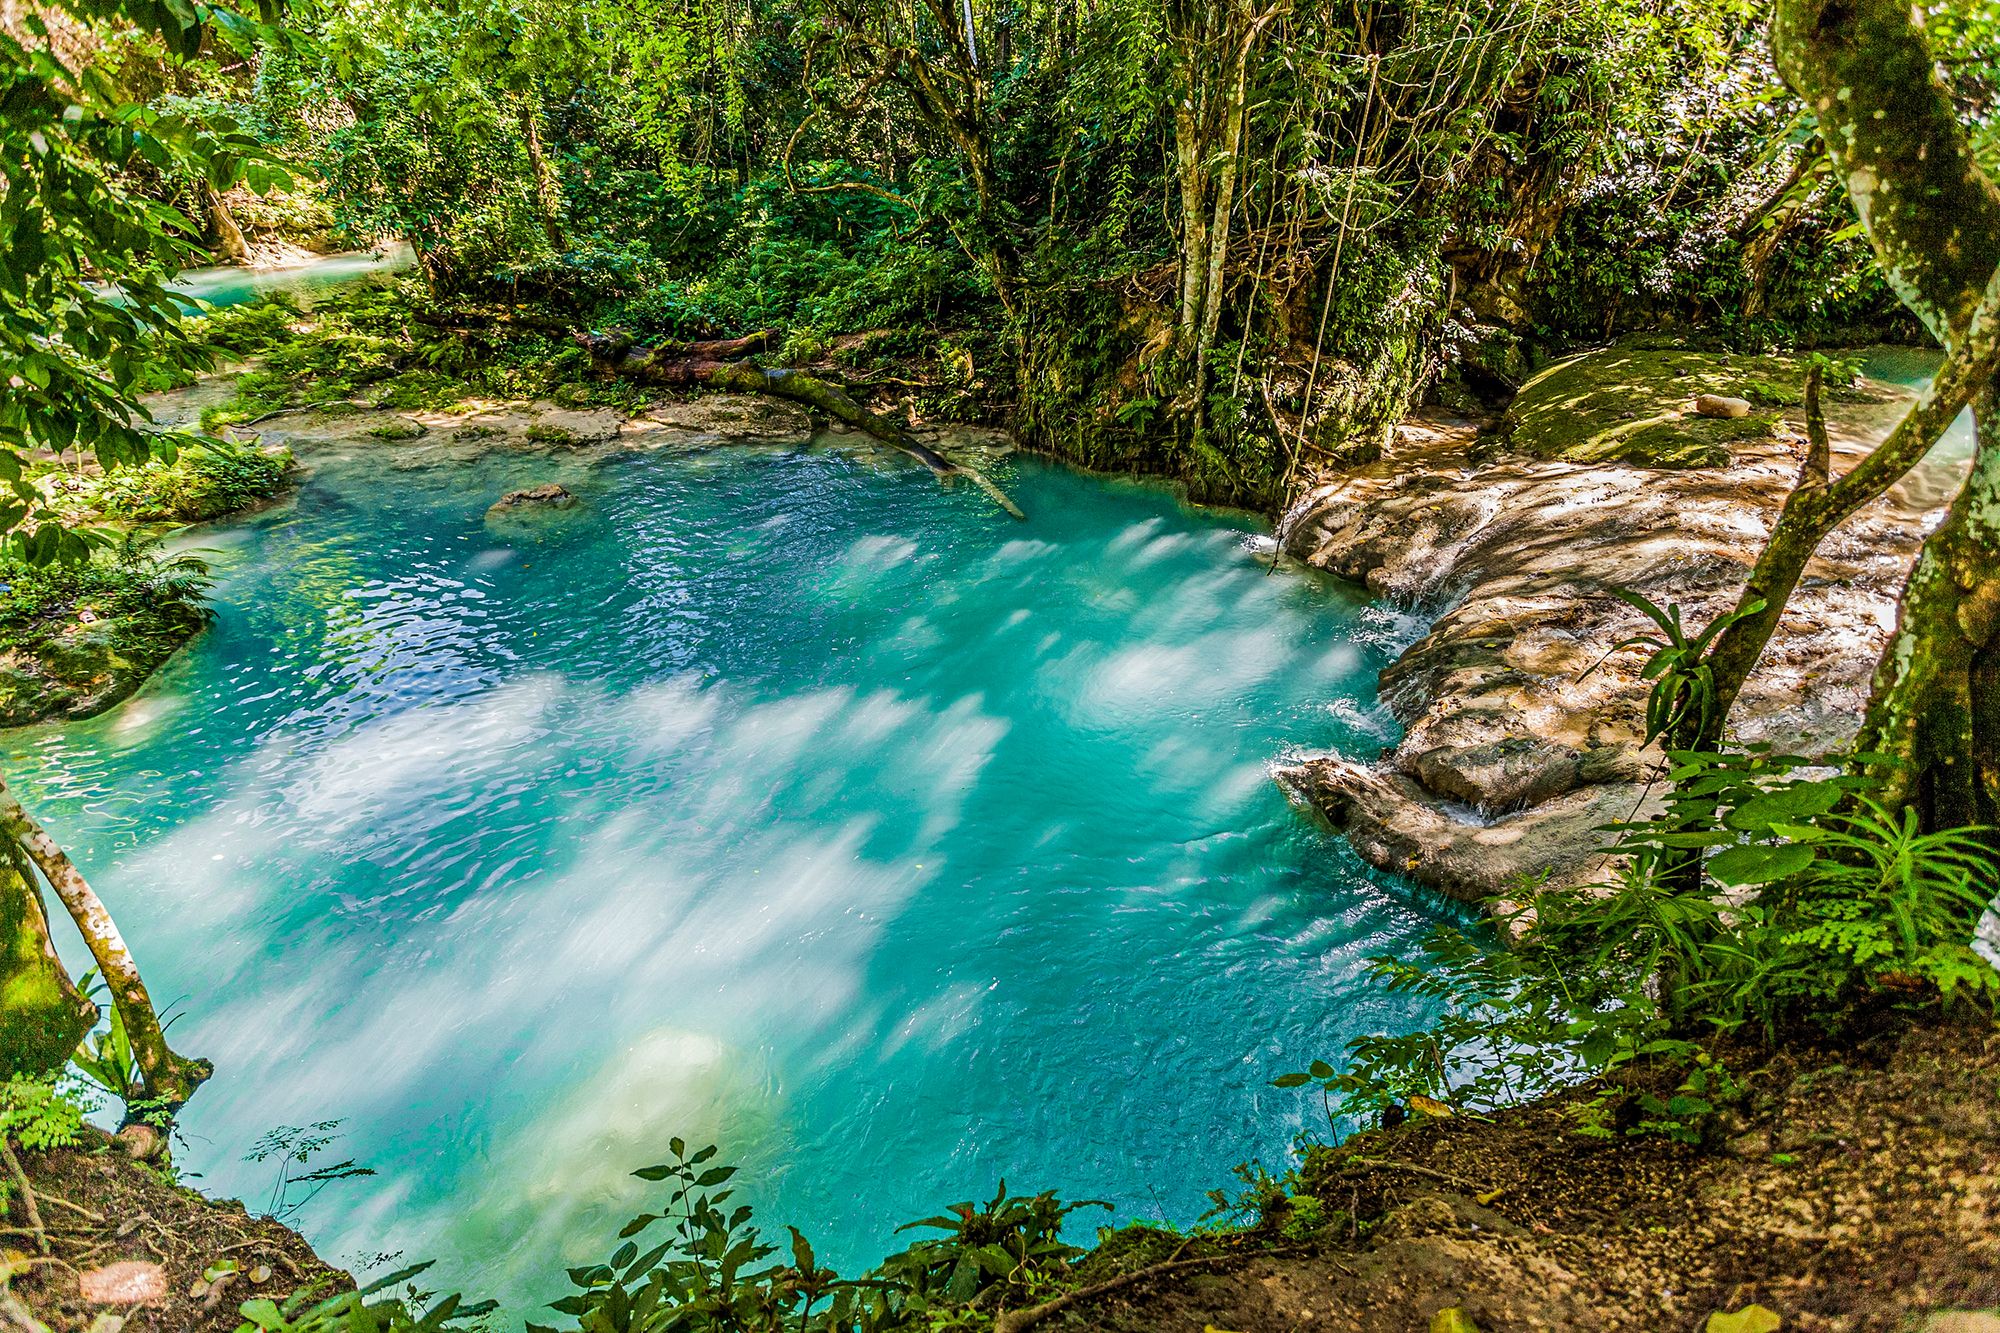 Ocho-RIos-Blue-Hole-Jamaica-Overview---9